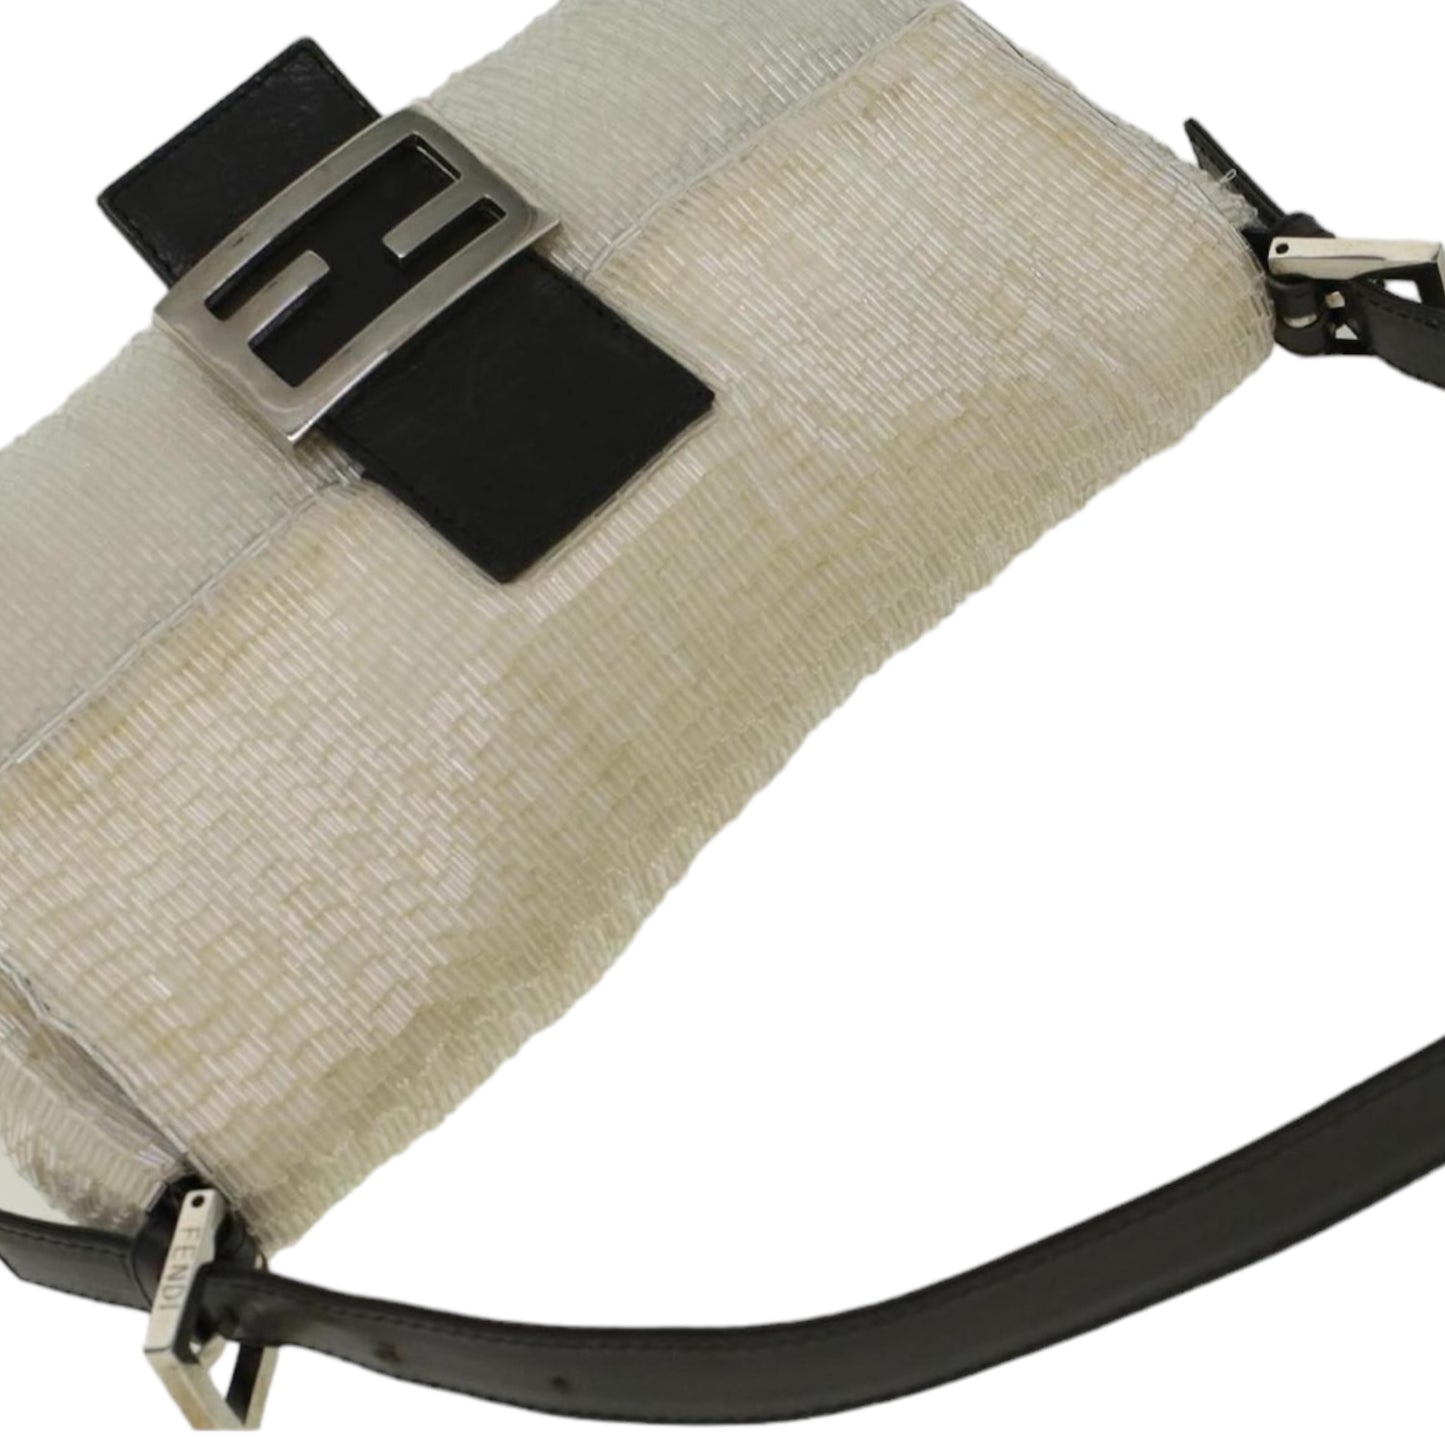 Vintage FENDI Mamma Baguette Shoulder Bag Beads Leather White